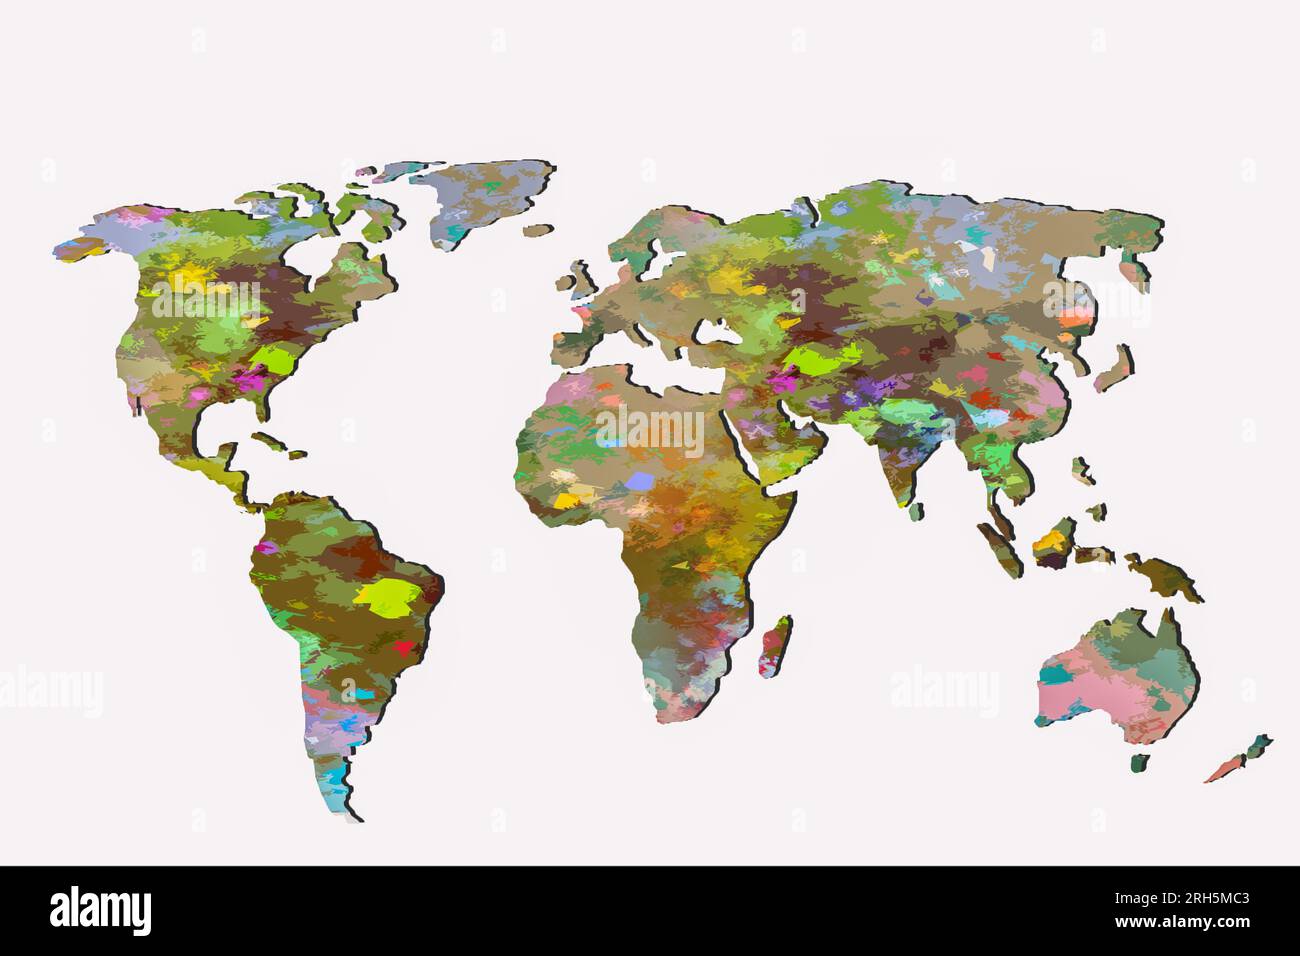 Aproximadamente esbozado mapa del mundo como conceptos empresariales globales Foto de stock